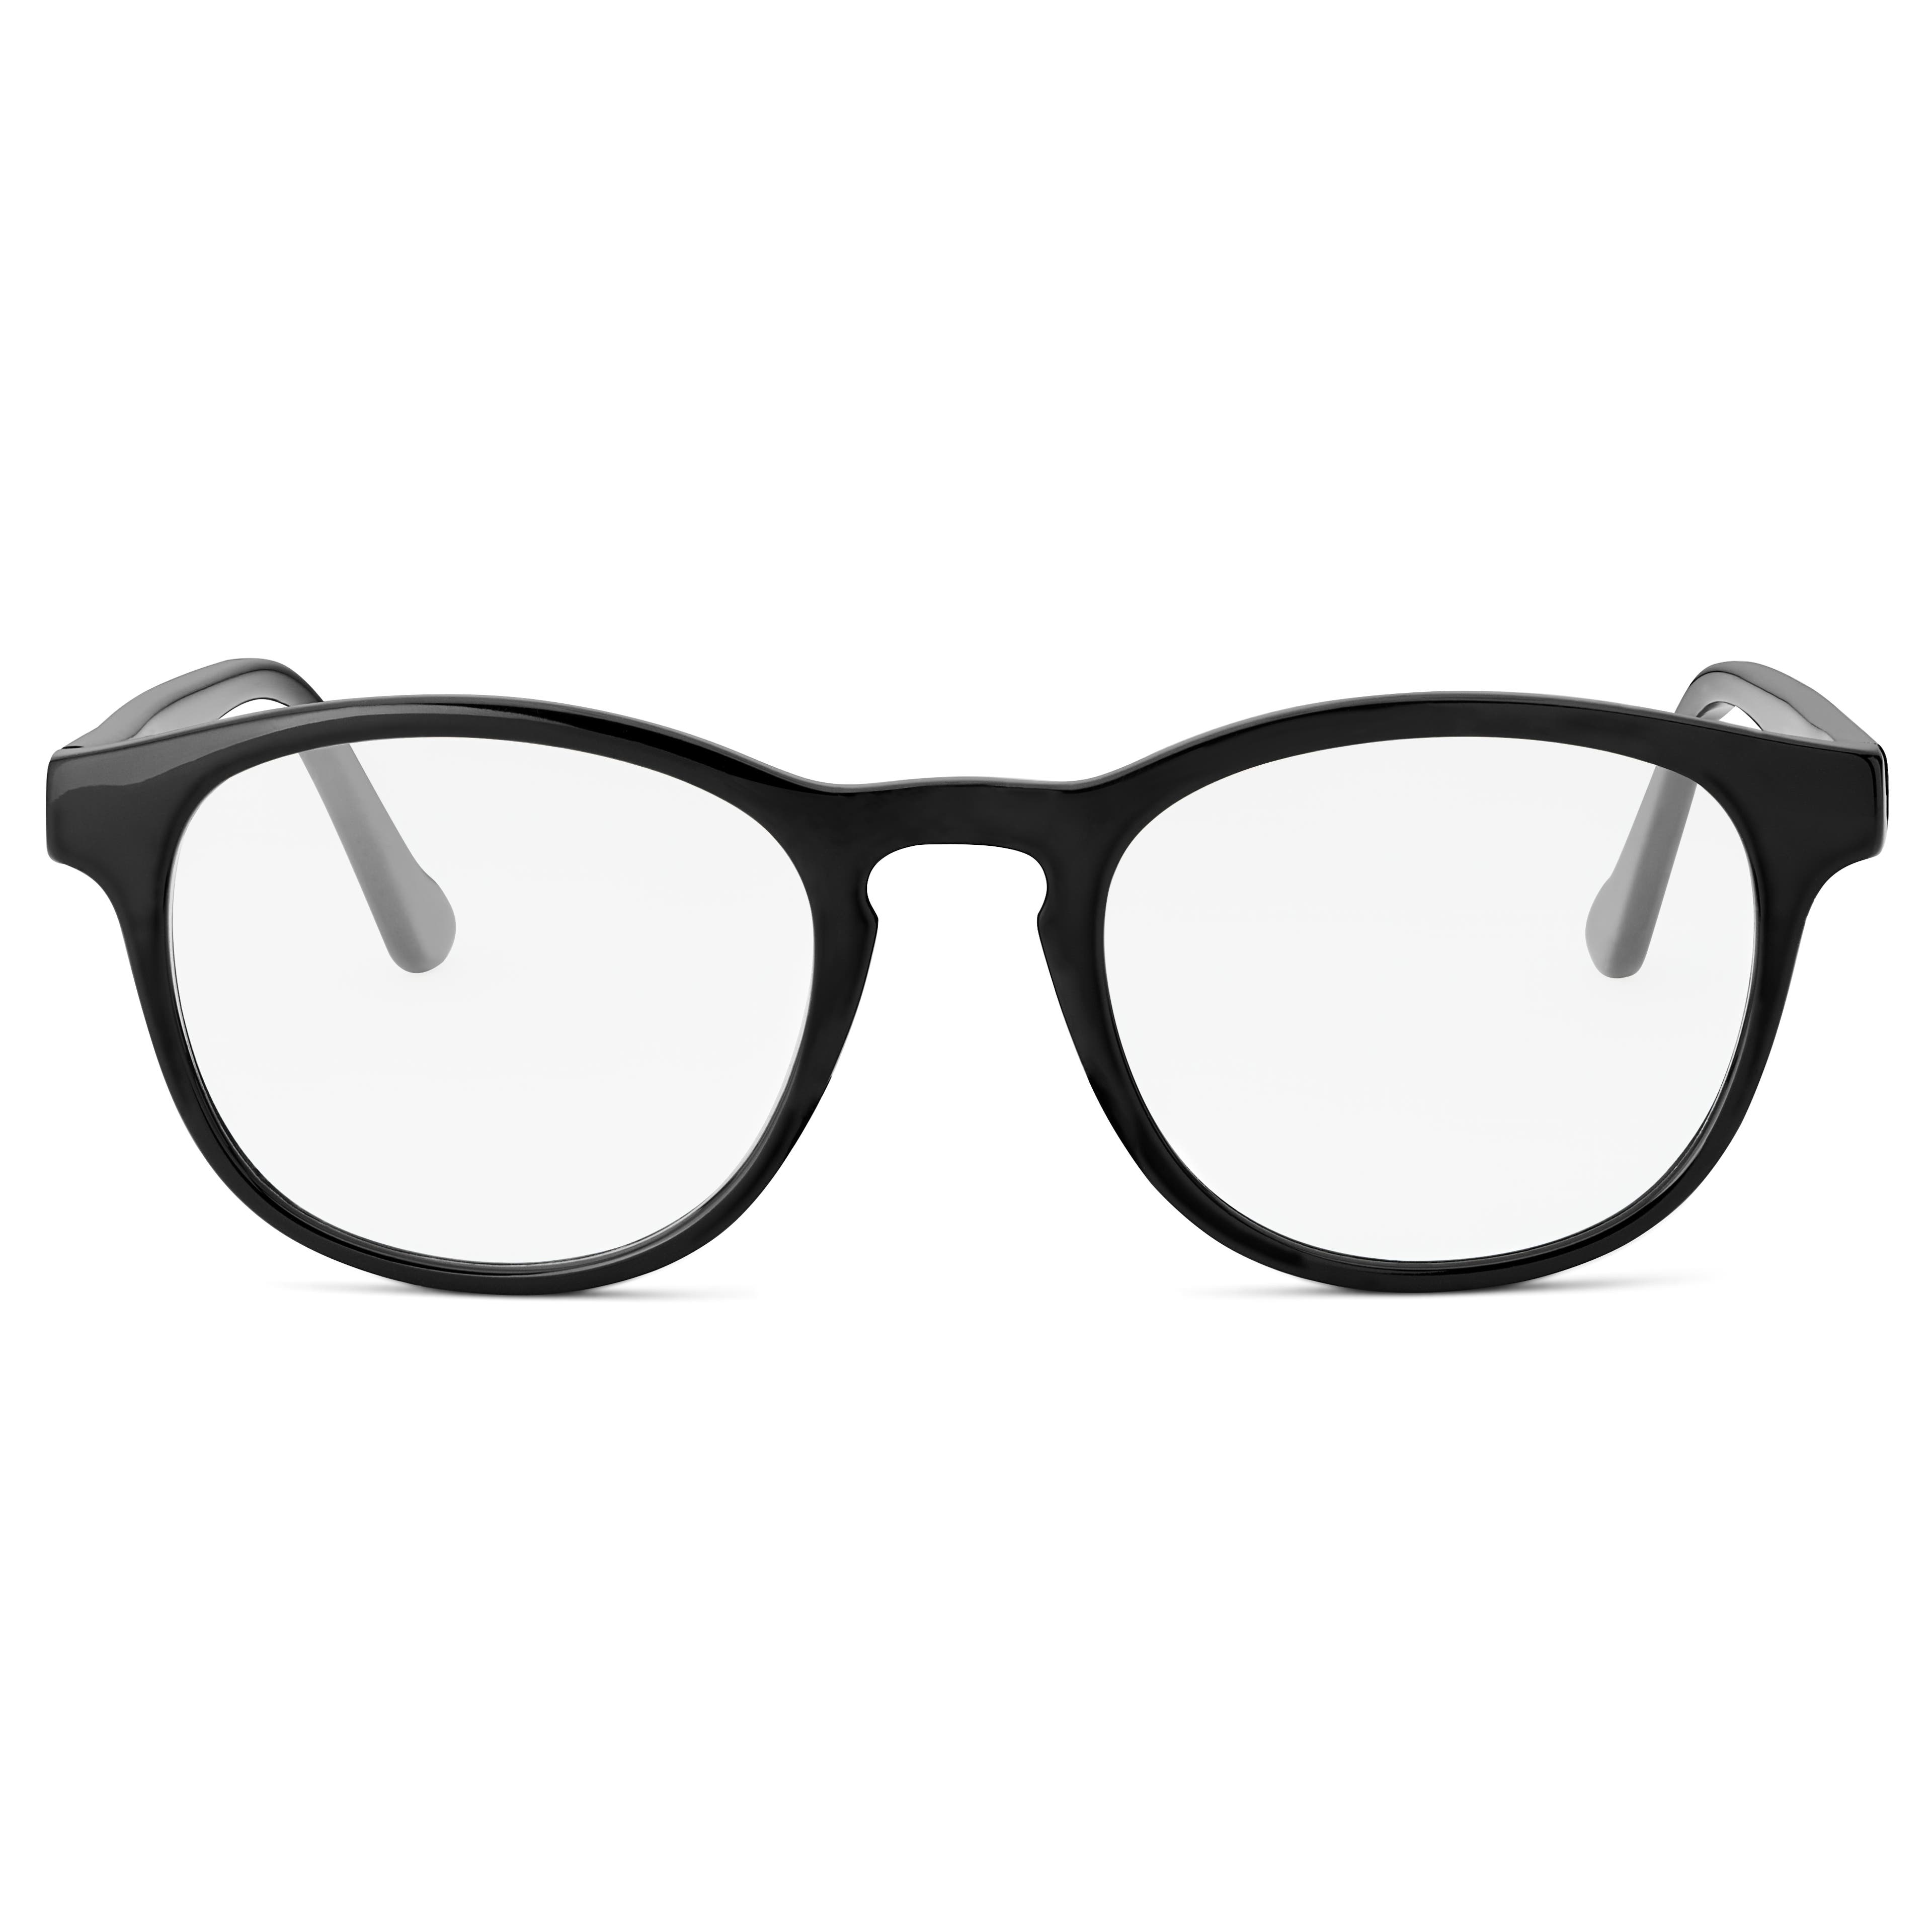 Klasyczne czarno-niebieskie okulary z przezroczystymi soczewkami blokującymi światło